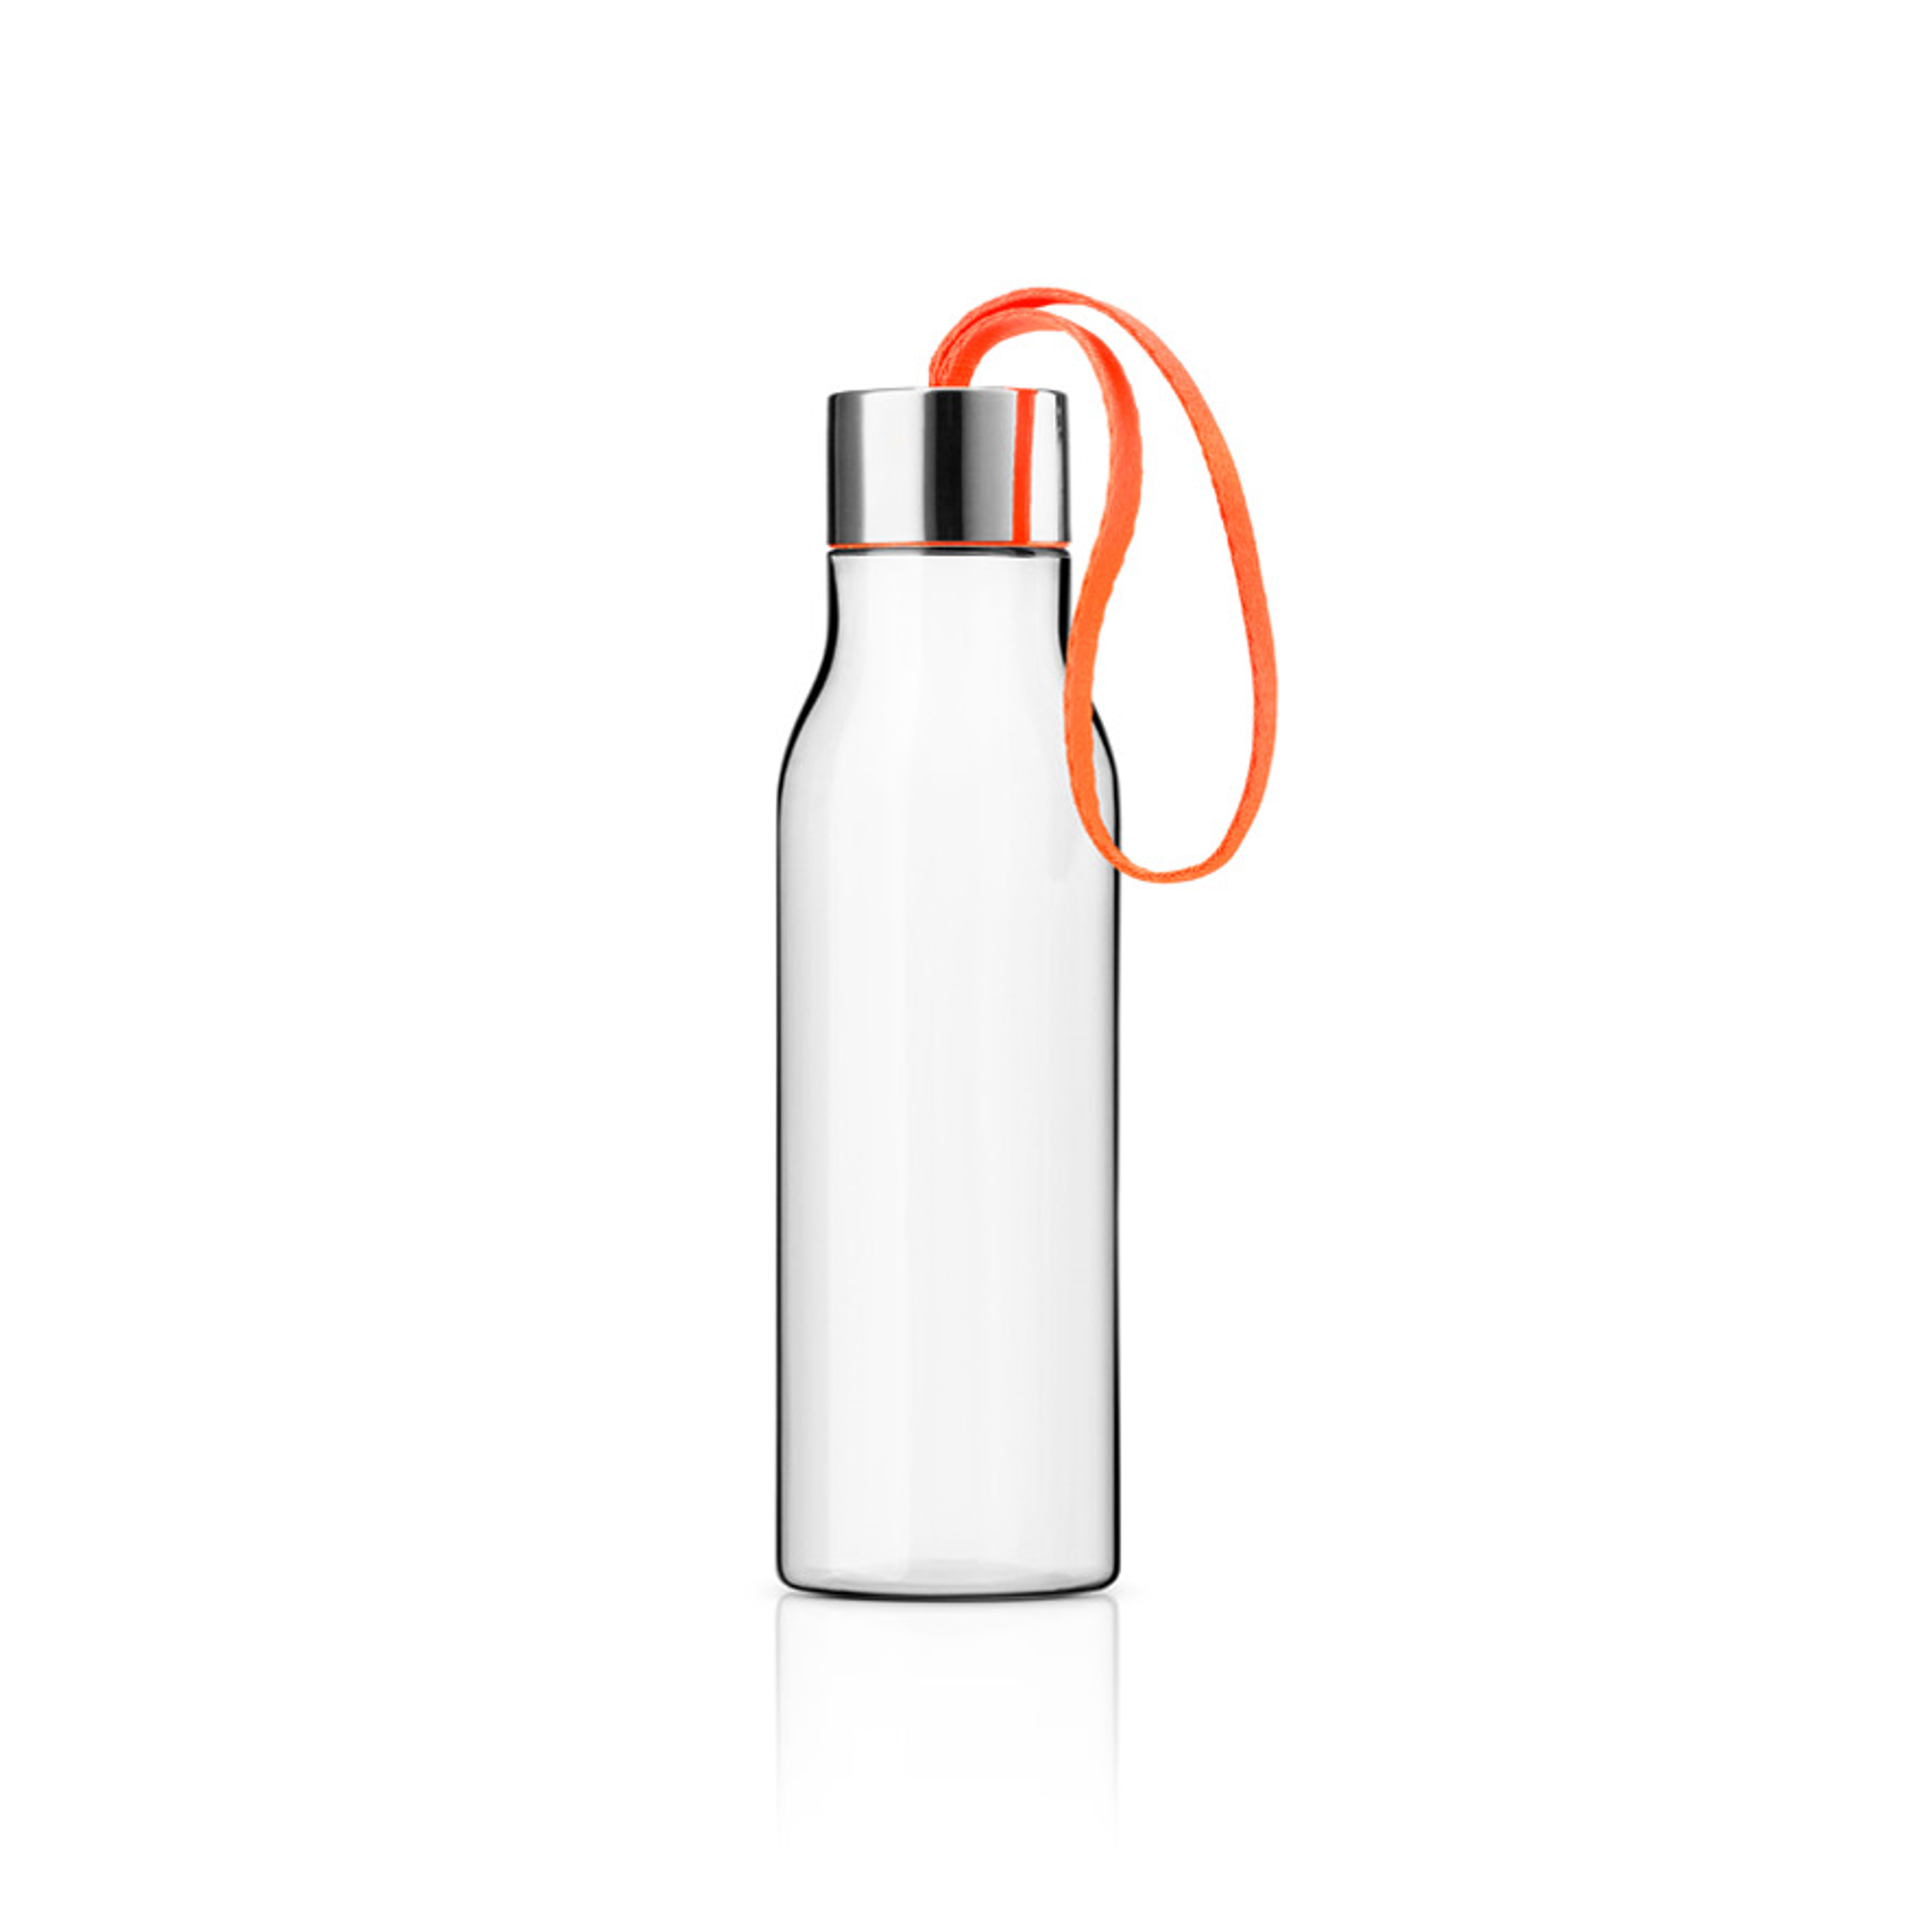 Trinkflasche - 0,5 Liter - Juicy orange